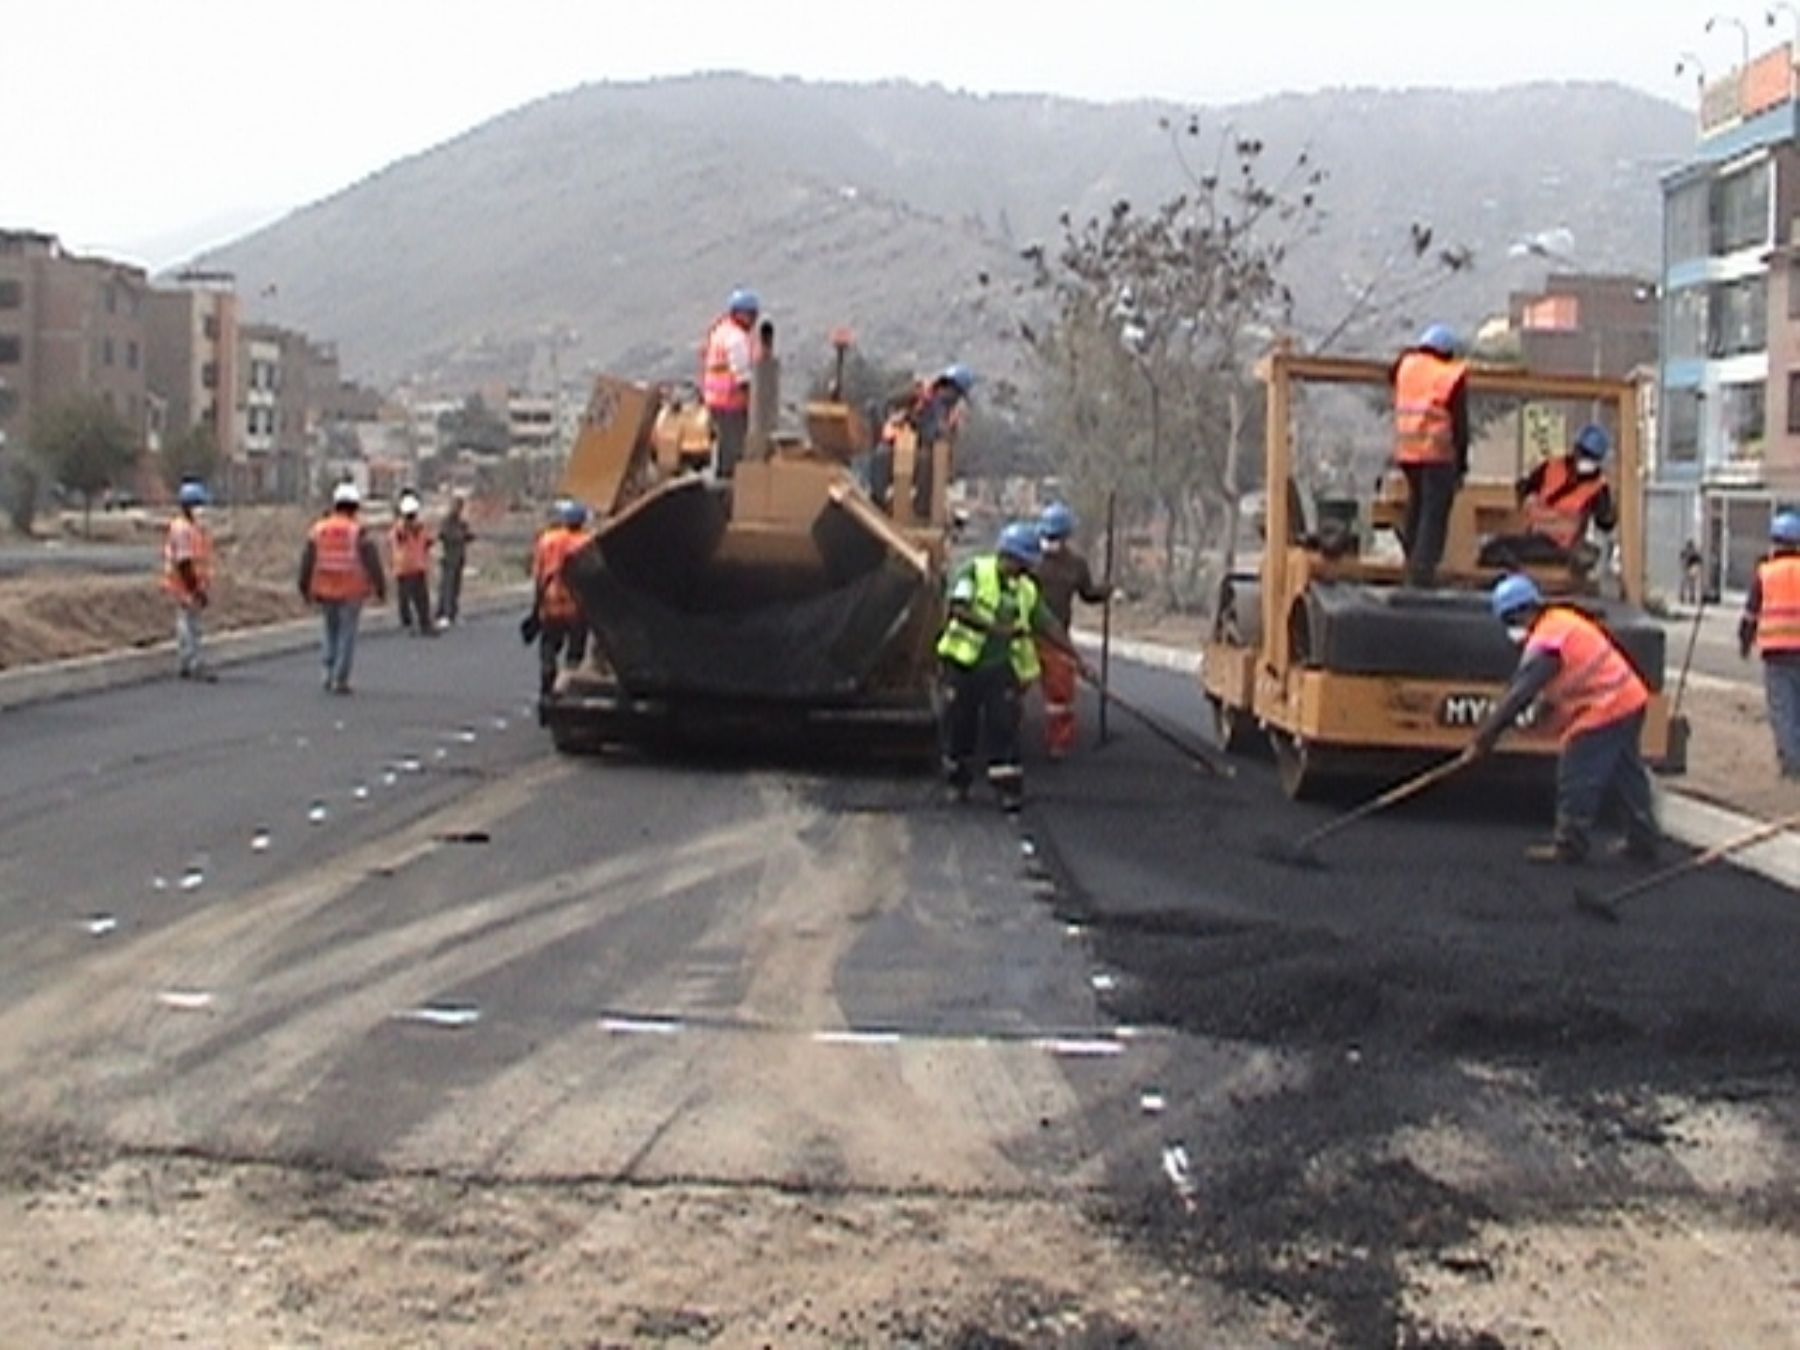 Municipio de Ate inició asfaltado de la avenida Prolongación Javier Prado, que tendrá ocho carriles y permitirá reducir el tránsito de 40 a 10 minutos hasta la carretera Central.